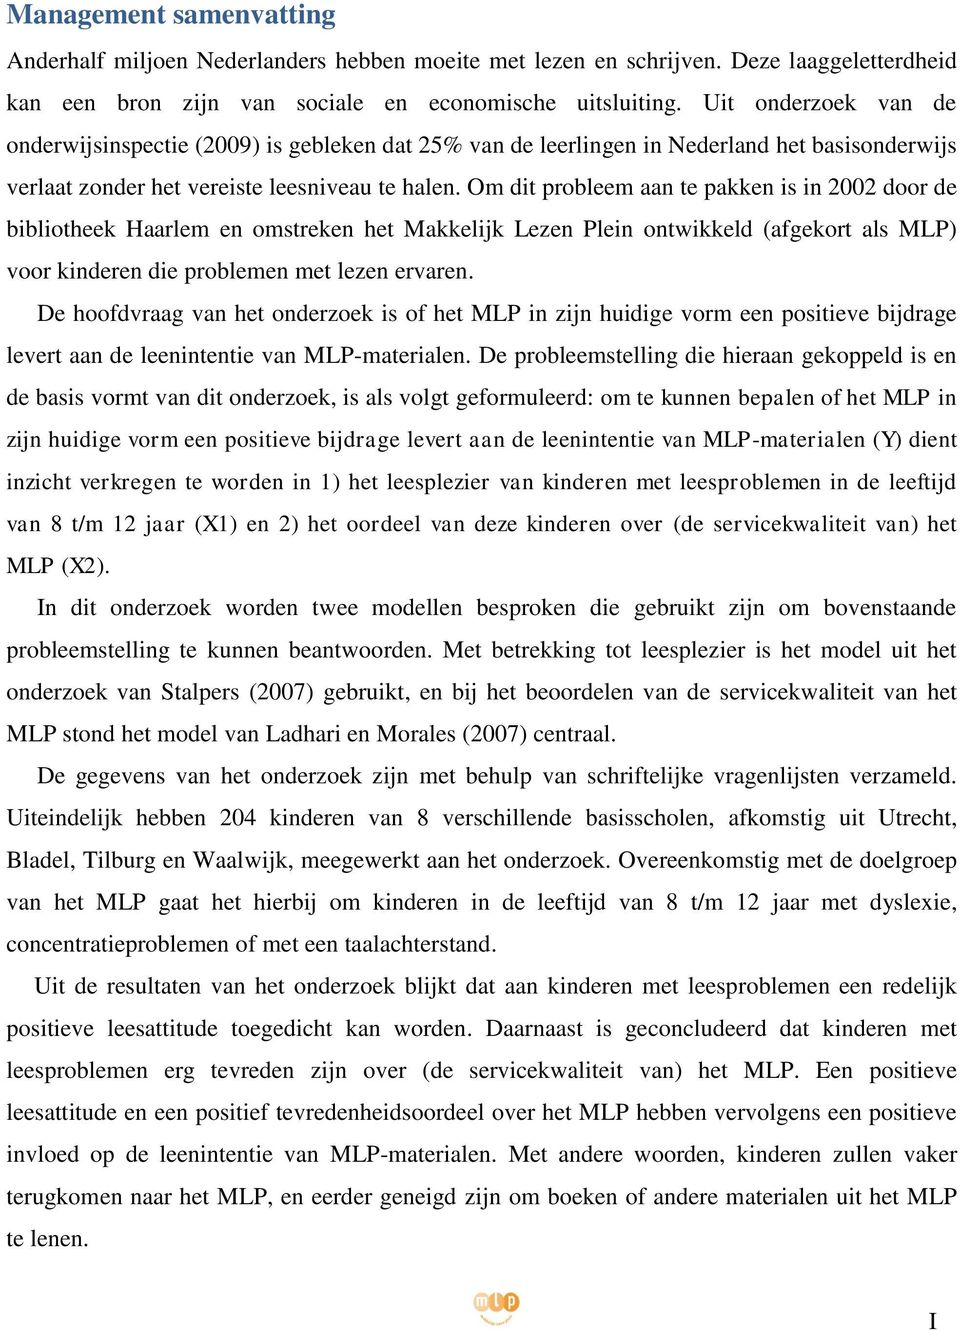 Om dit probleem aan te pakken is in 2002 door de bibliotheek Haarlem en omstreken het Makkelijk Lezen Plein ontwikkeld (afgekort als MLP) voor kinderen die problemen met lezen ervaren.